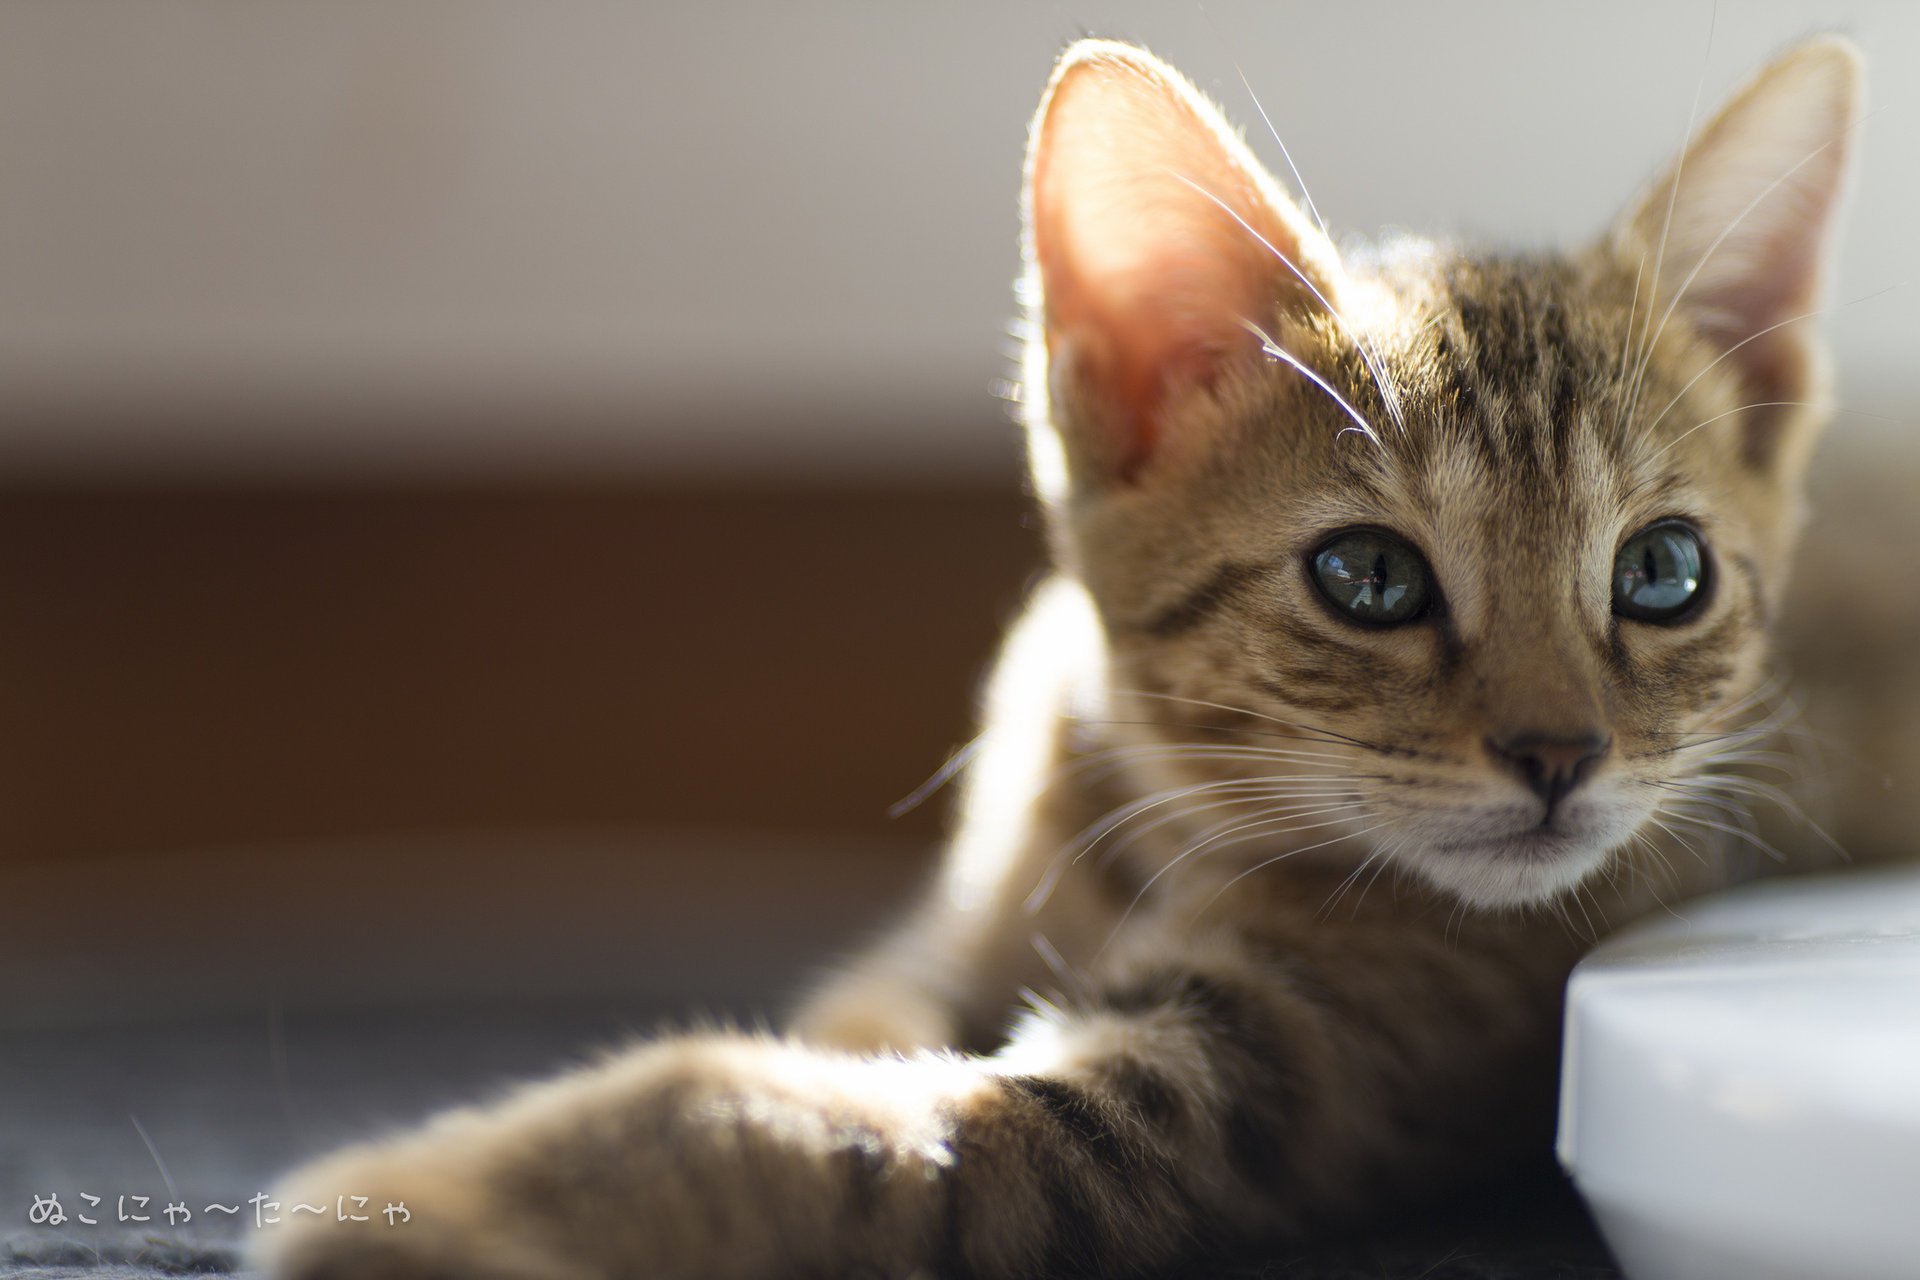 Полосатый красавец-кот греется на солнышке